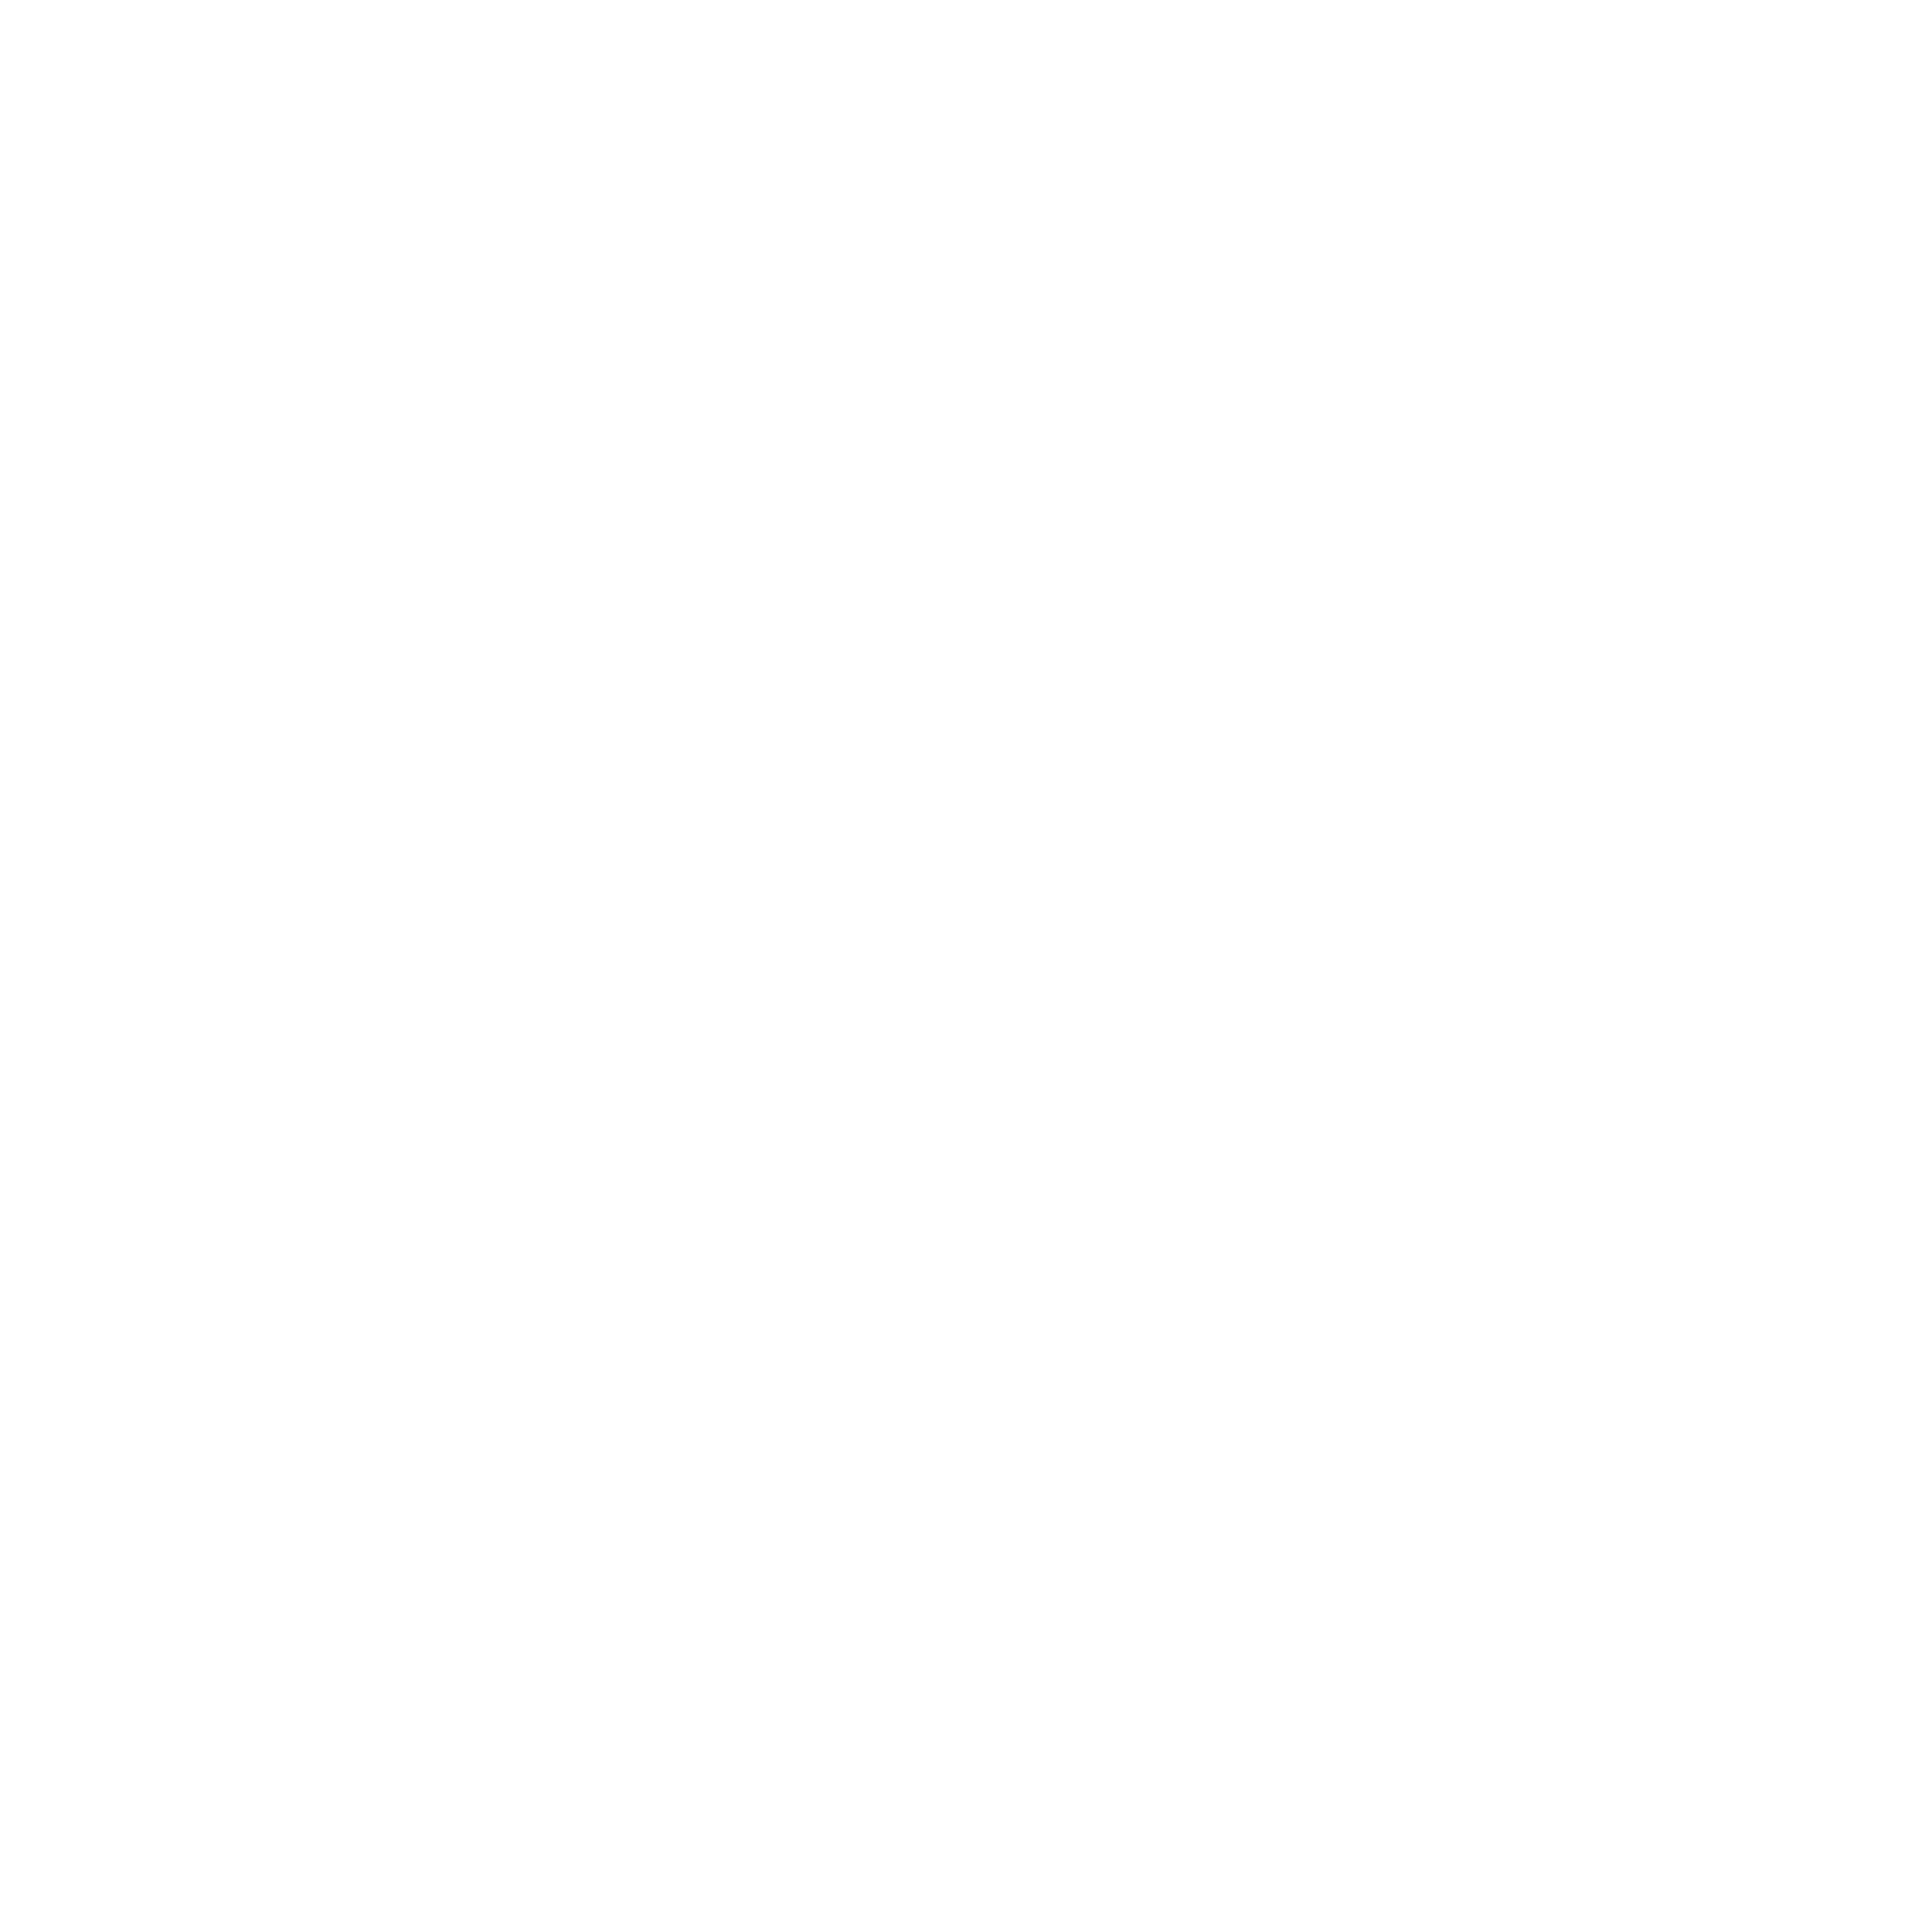 EXWE Individualsoftware